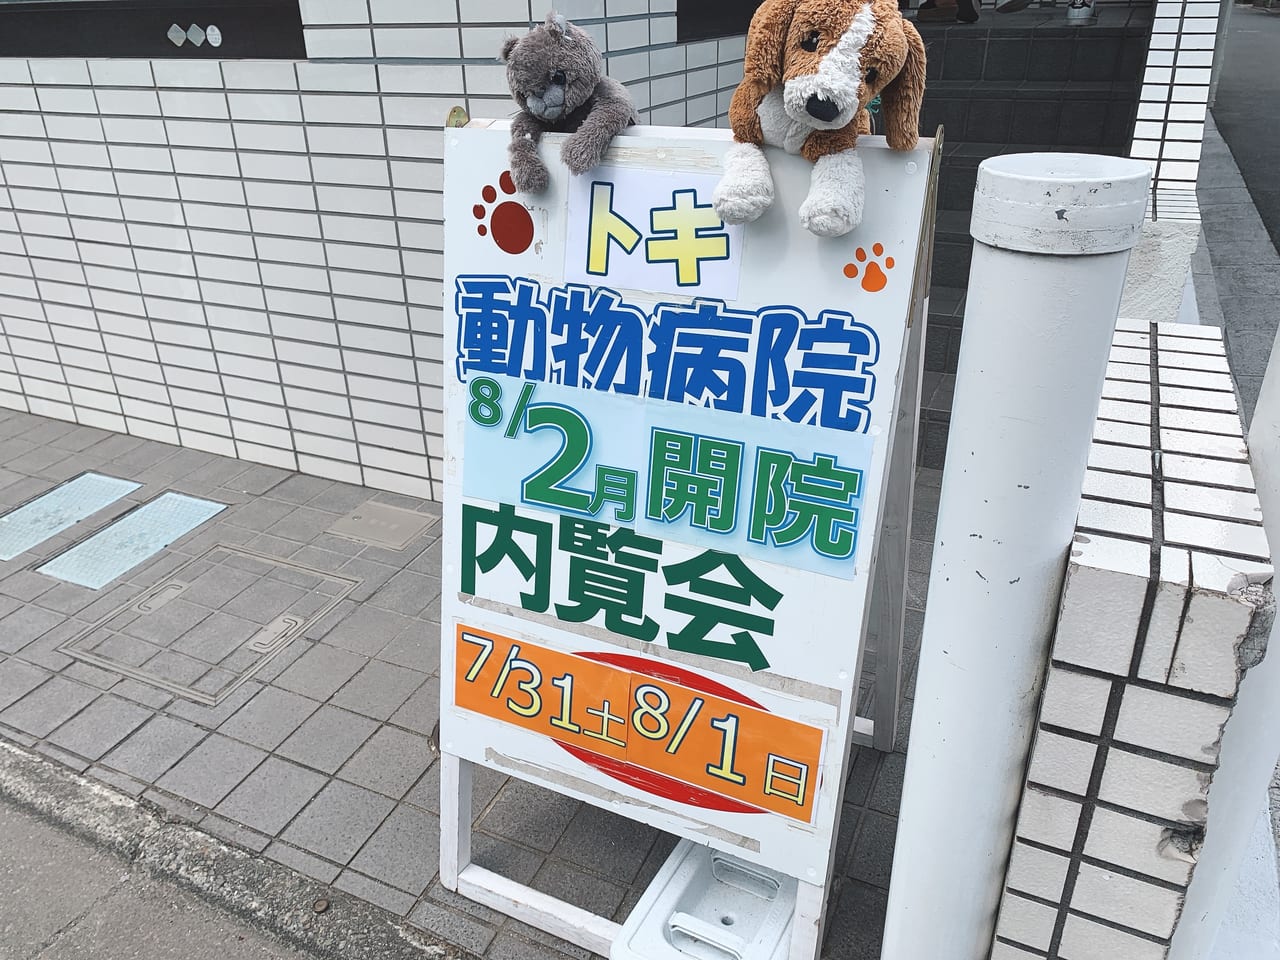 トキ動物病院の内覧会に行ってきました。